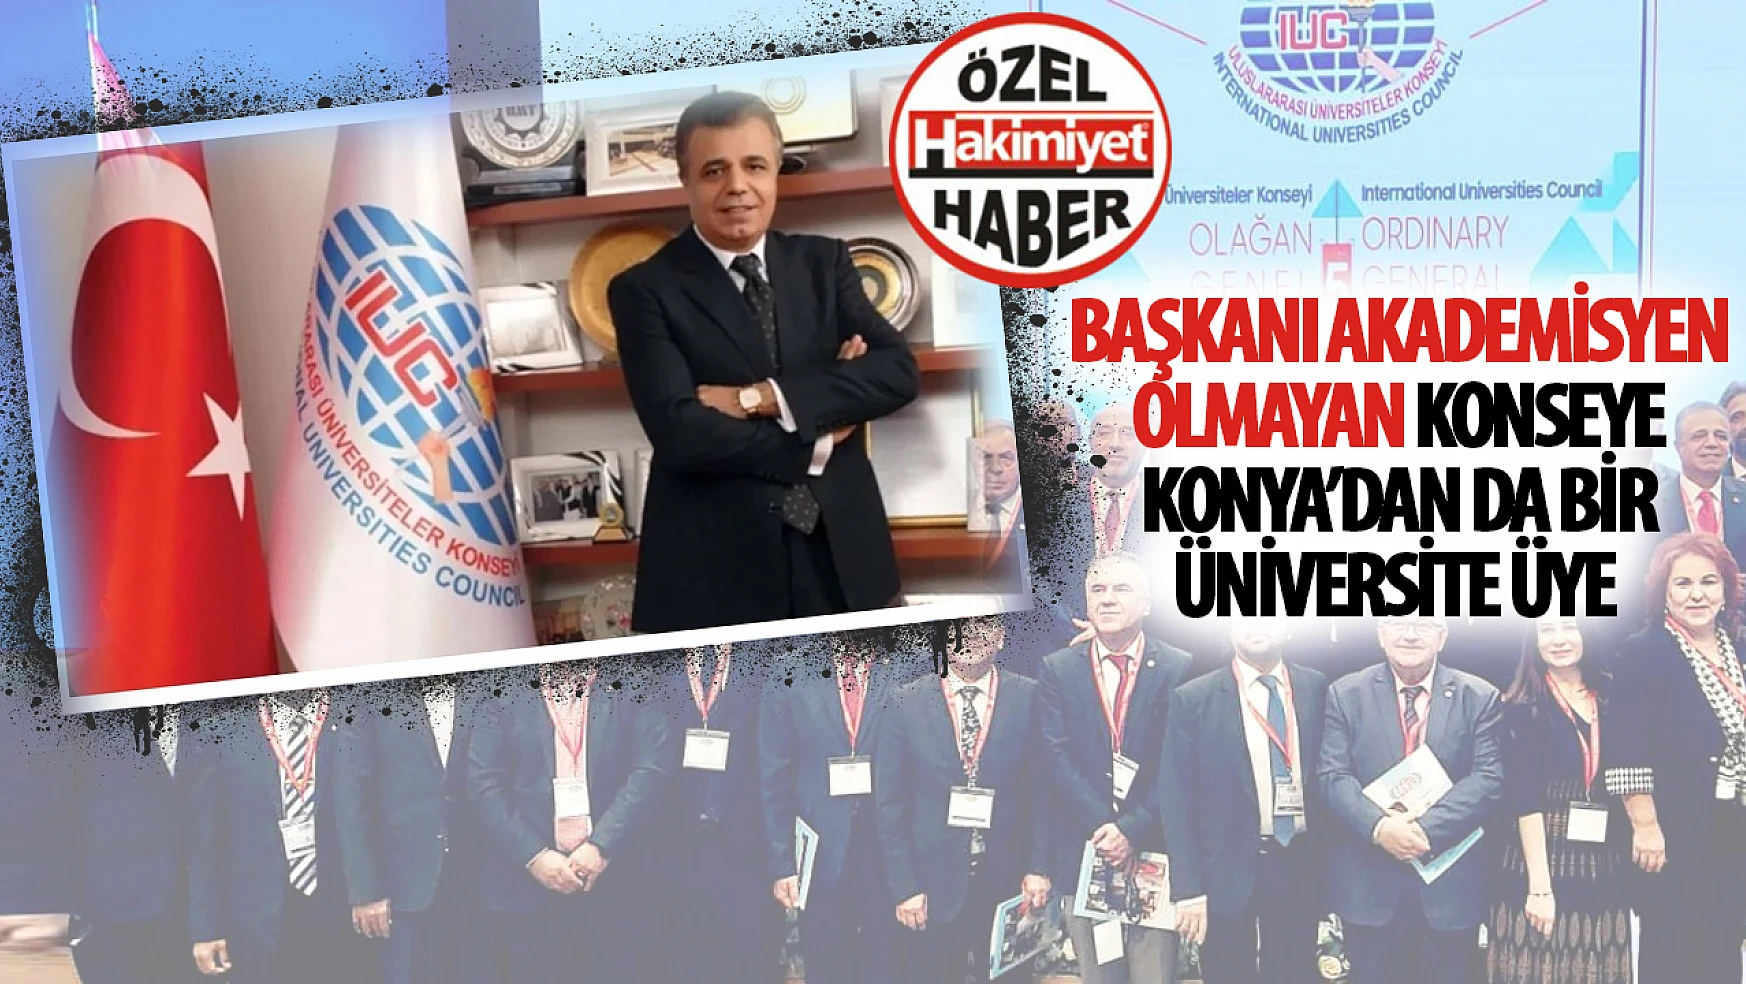 Başkanı Akademisyen Olmayan Uluslararası Üniversiteler Konseyi'ne Konya'dan da Bir Üniversite Üye